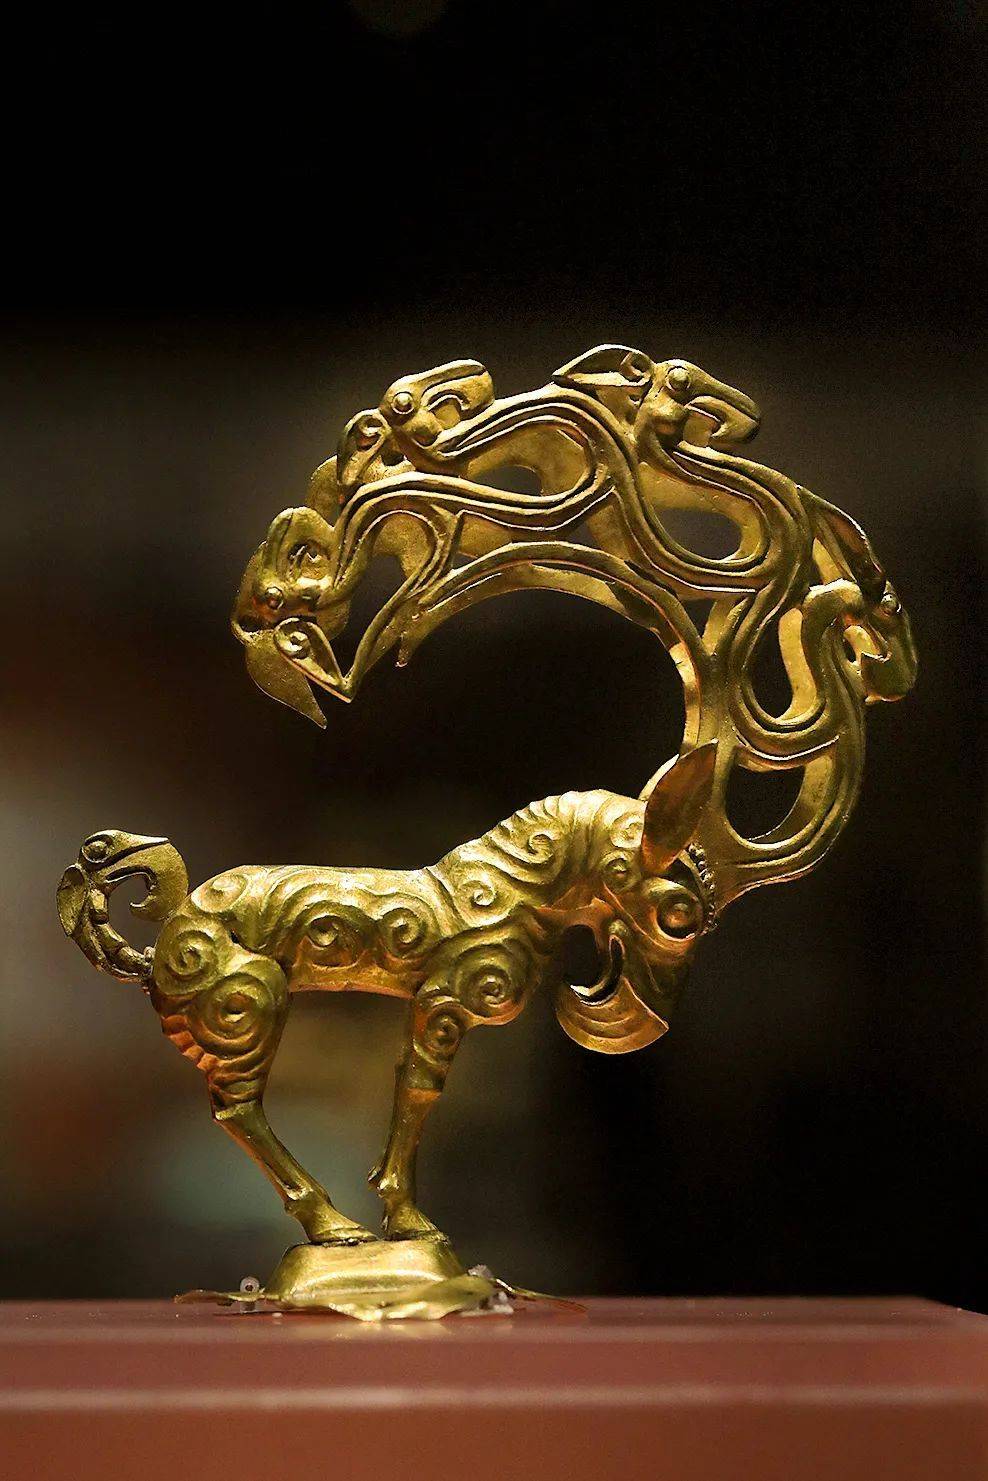 战国匈奴金怪兽，反映了匈奴人对勇猛强悍动物的崇拜，陕西历史博物馆藏。摄影/动脉影